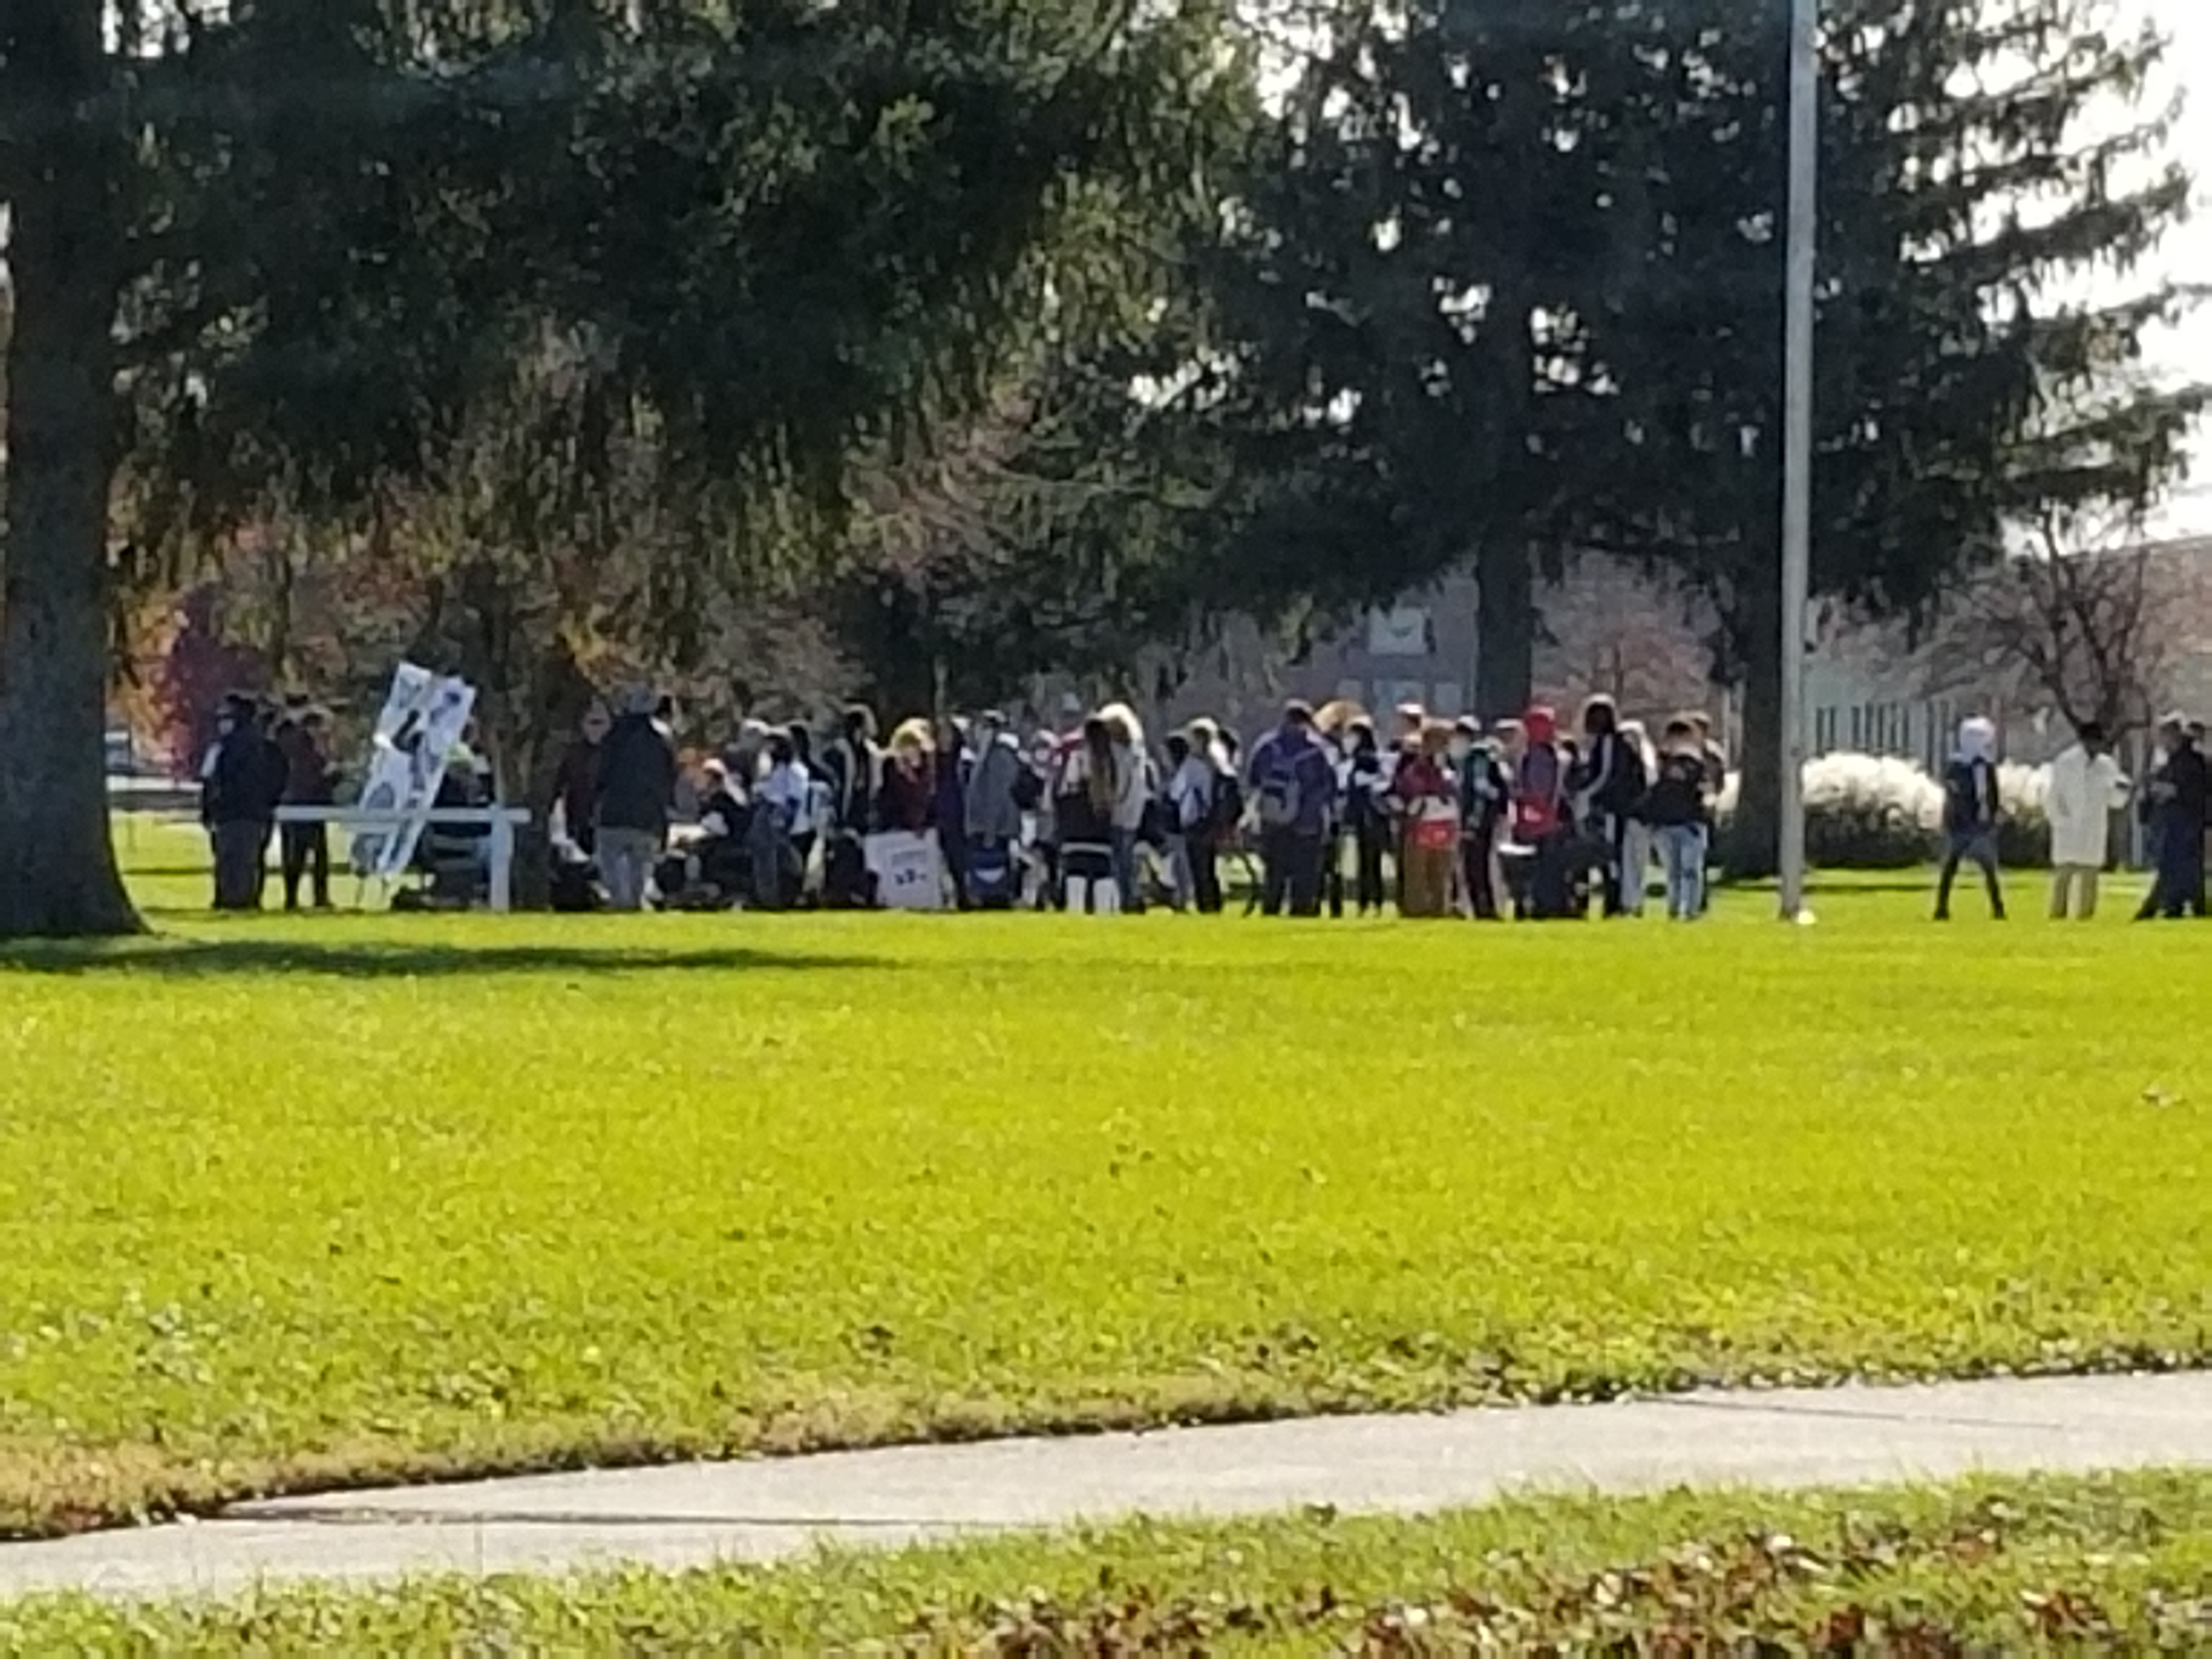 Protest marks the start of Thanksgiving break